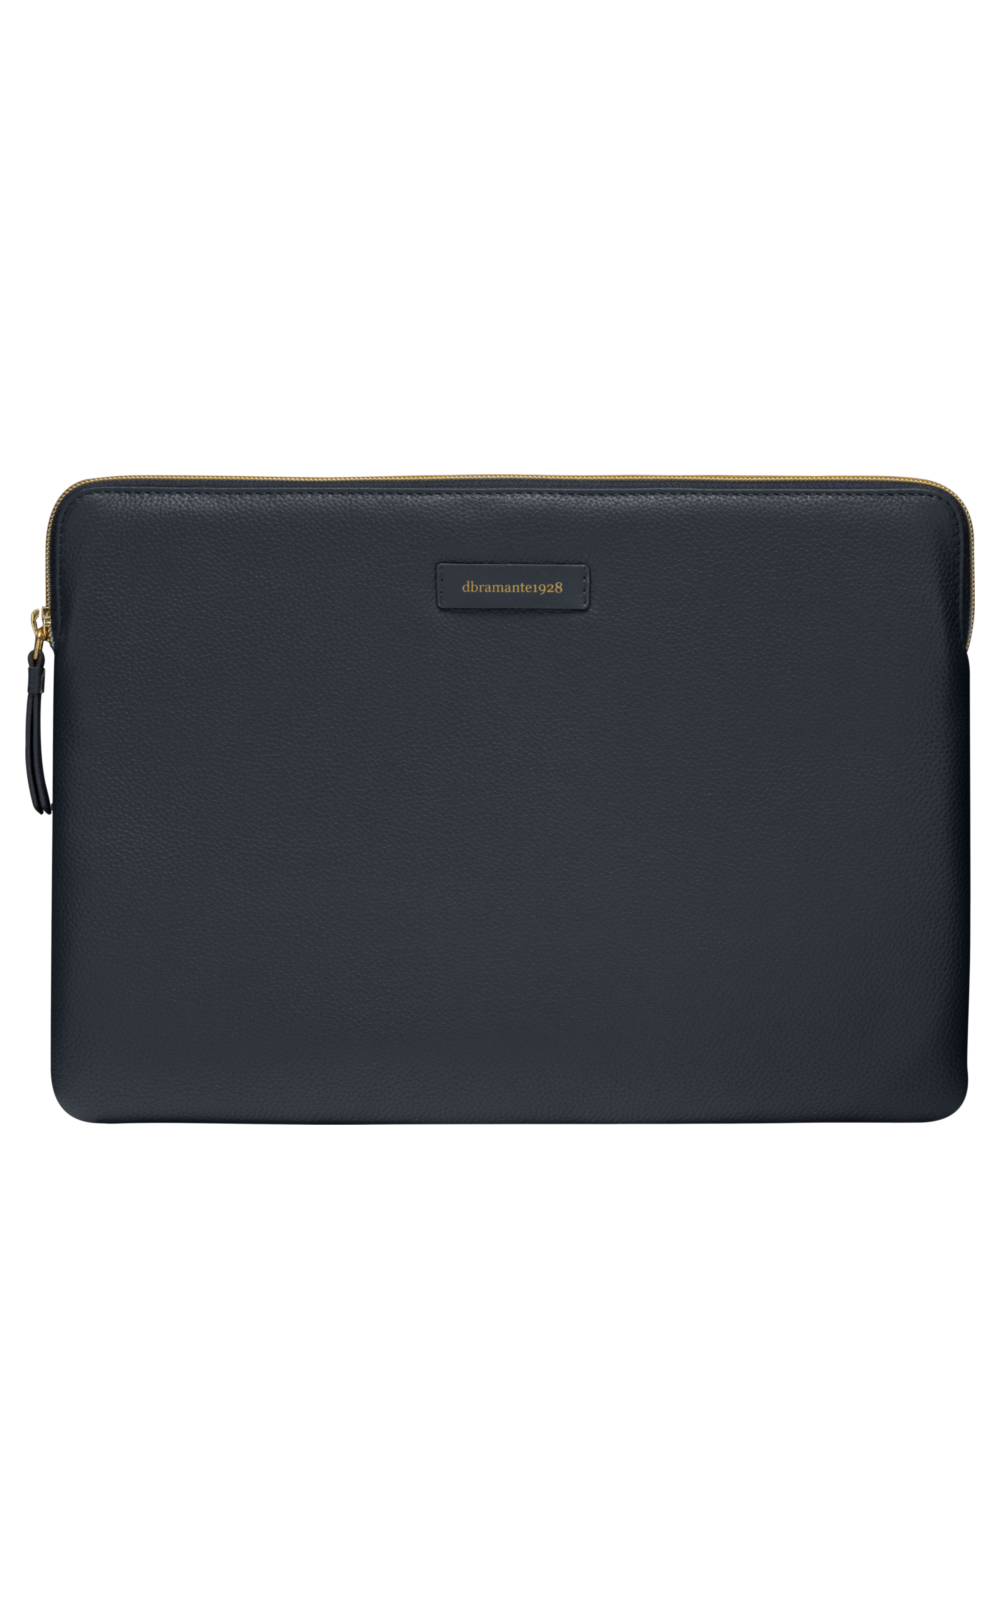 Photos - Laptop Bag Dbramante1928 PA13PBBL5599 laptop case 33 cm  Sleeve case Bl (13")